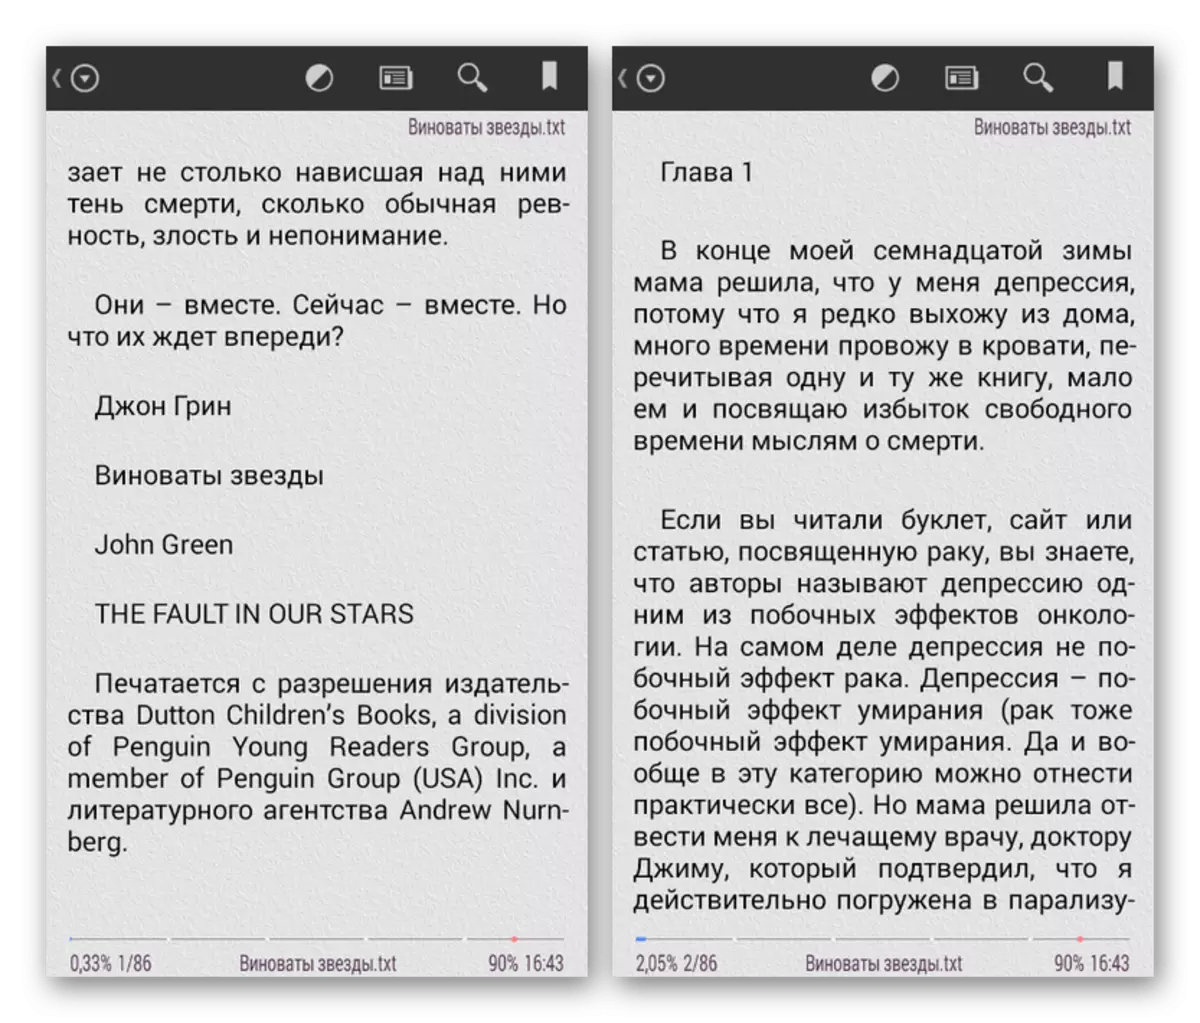 Grāmatas piemērs TXT formātā uz Android